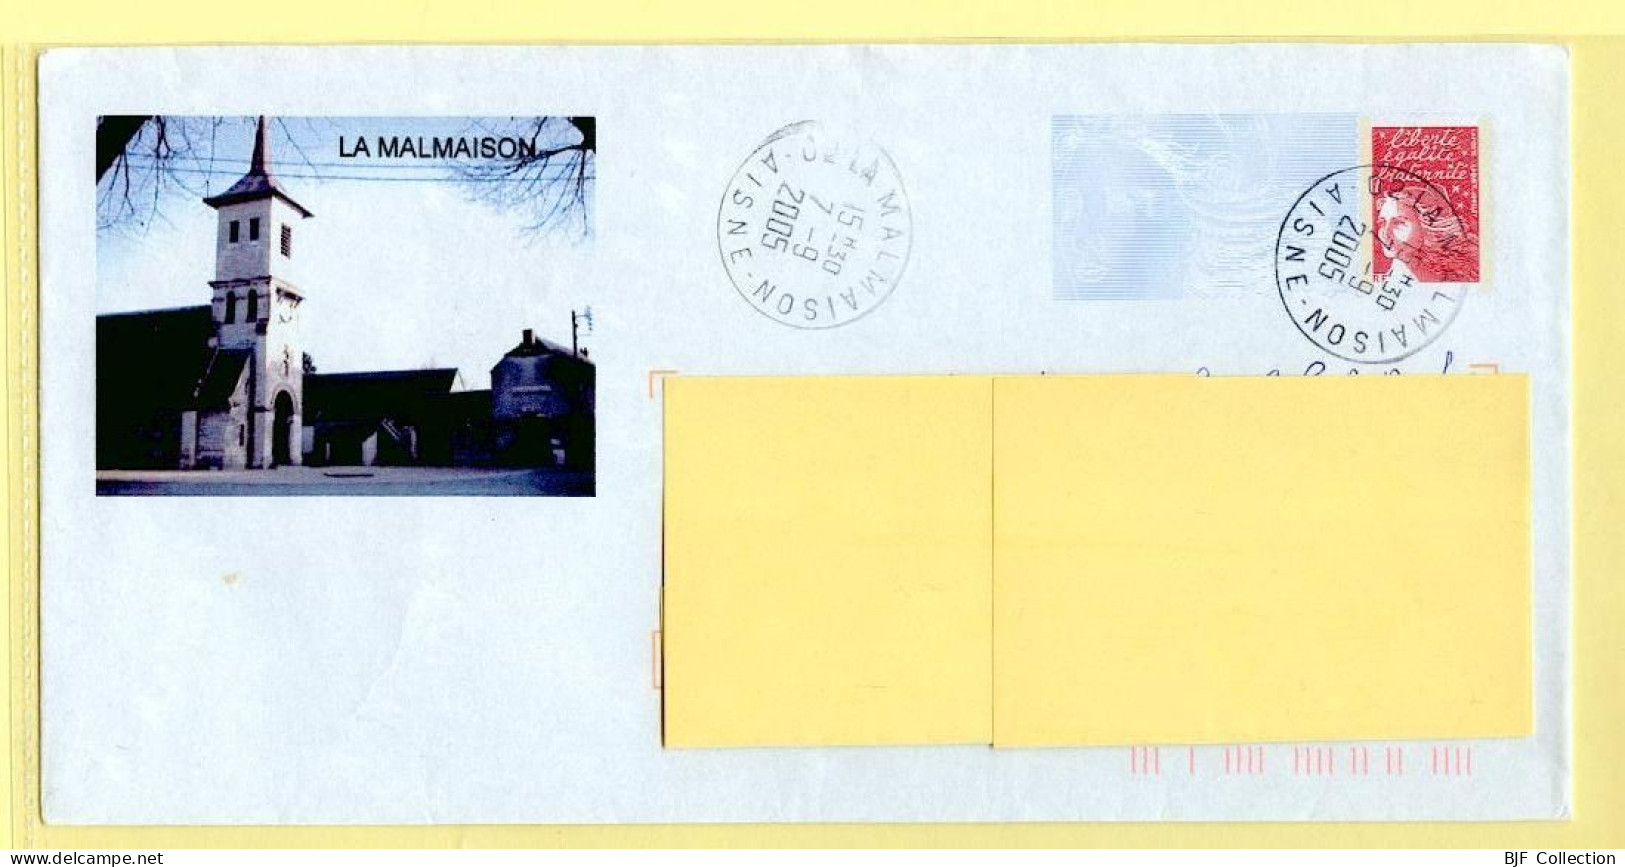 PAP Marianne De Luquet – LA MALMAISON (02) (N° 809 – Lot B2K/0308551) – 7/09/2005 - Prêts-à-poster:Overprinting/Luquet